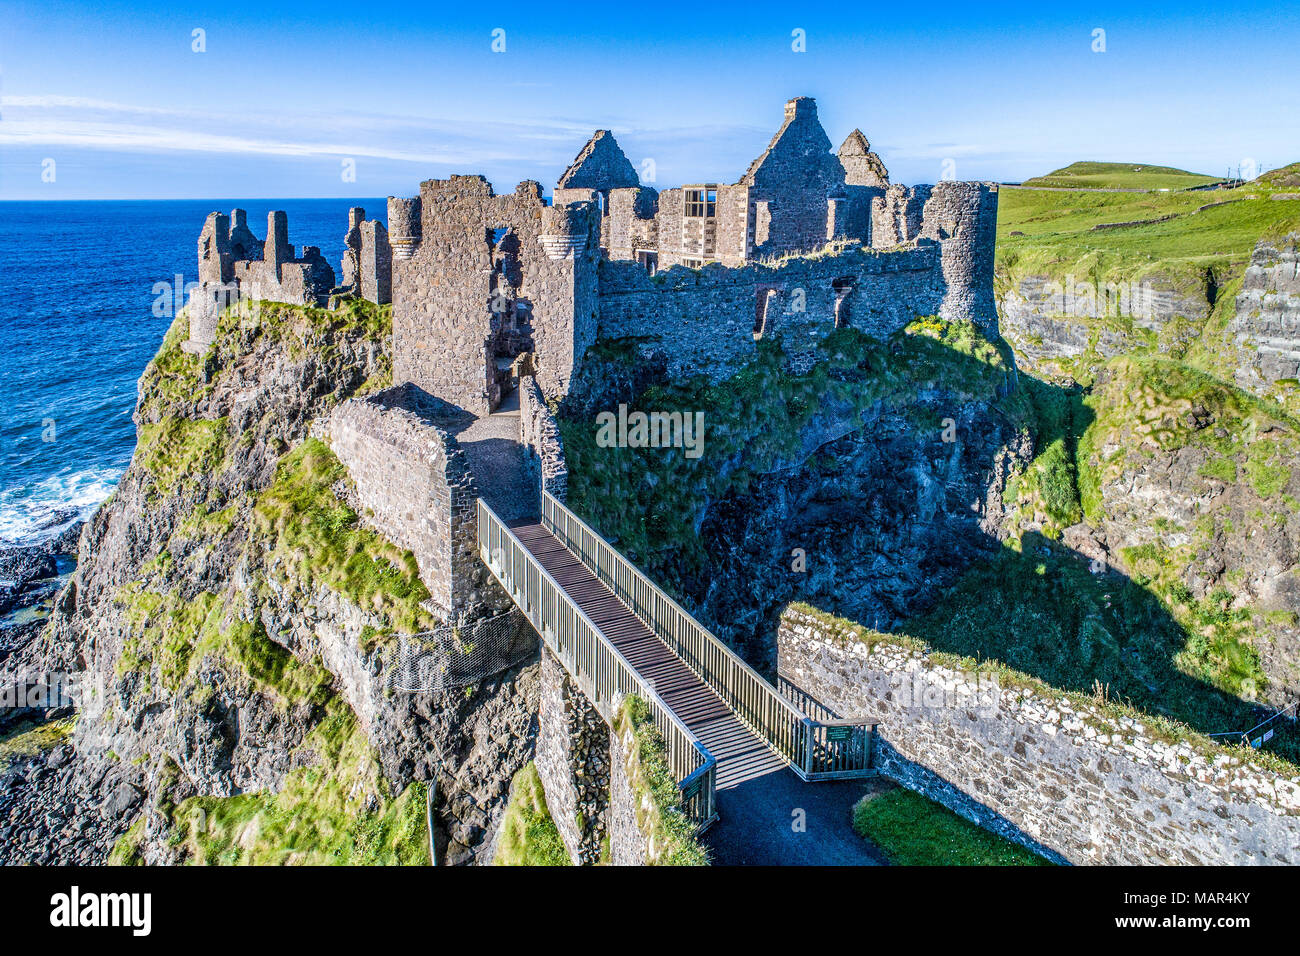 Ruines du château de Dunluce médiévale sur une falaise abrupte. Côte nord du comté d'Antrim, Irlande du Nord, Royaume-Uni. Vue aérienne de la lumière au coucher du soleil. Banque D'Images